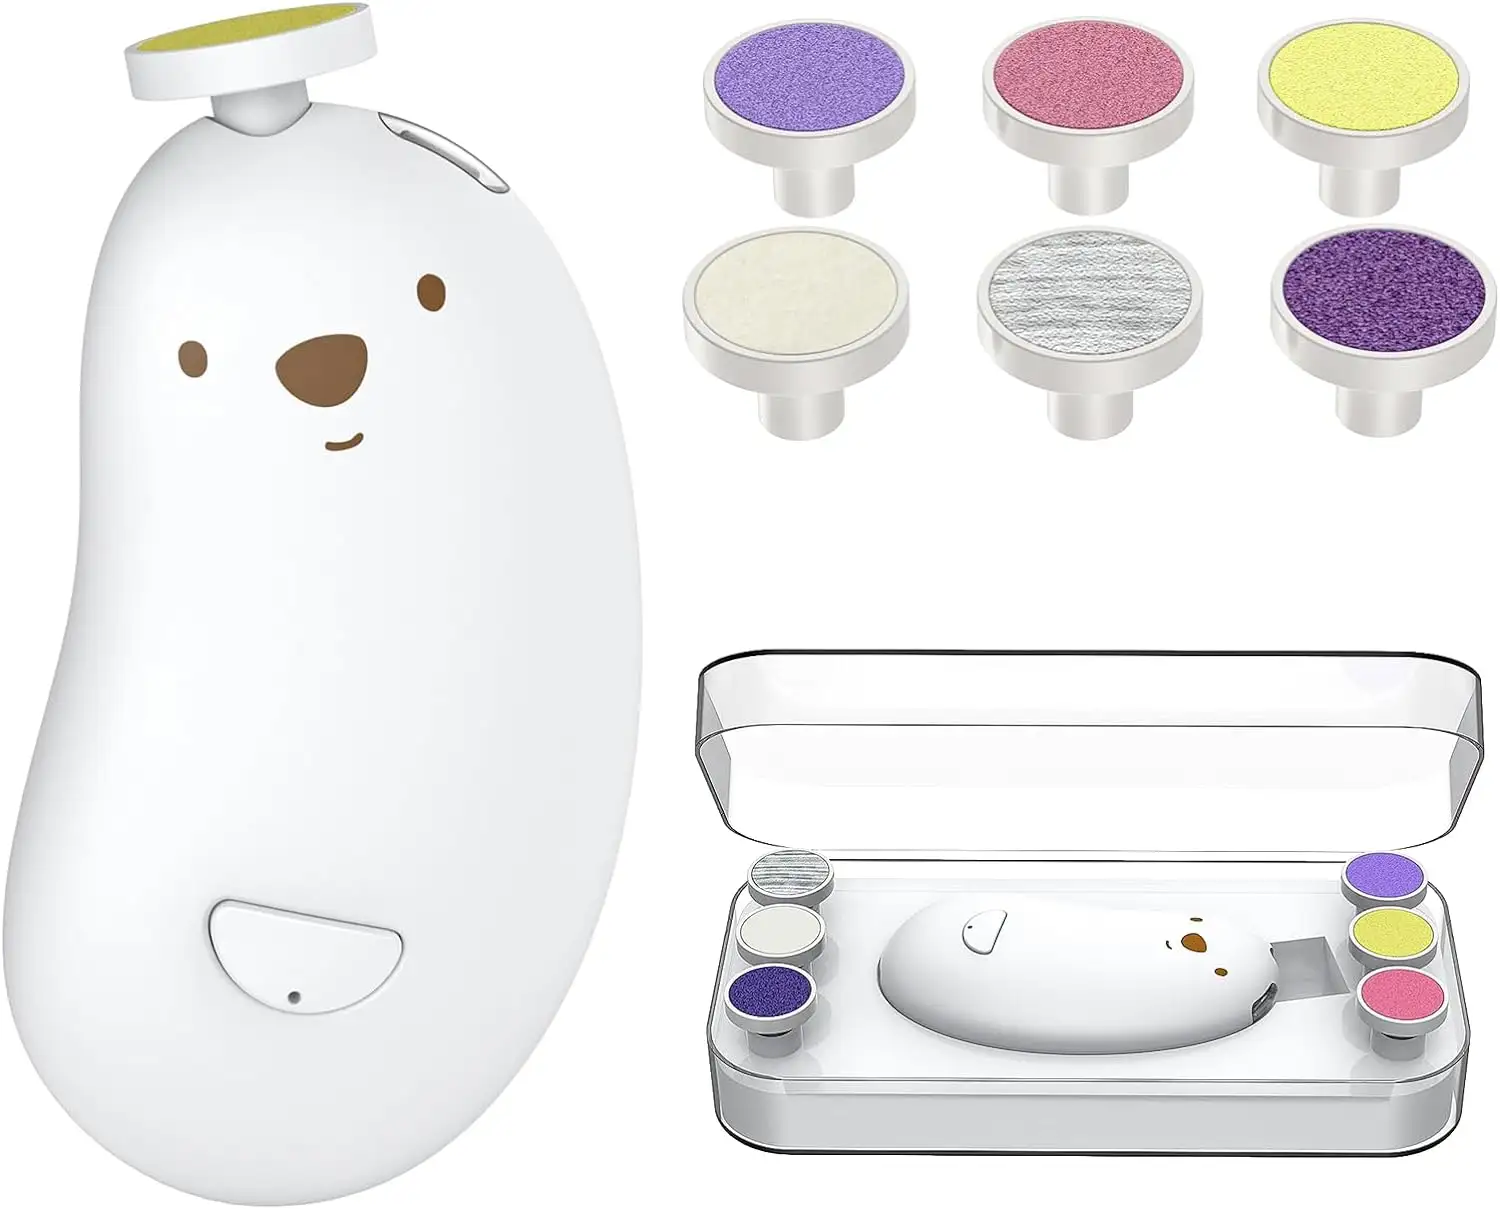 Şarj edilebilir 6 taşlama kafaları ve LED ışık güvenli bebek tırnak törpüsü Set bebek tırnak makası tırnak makası elektrikli